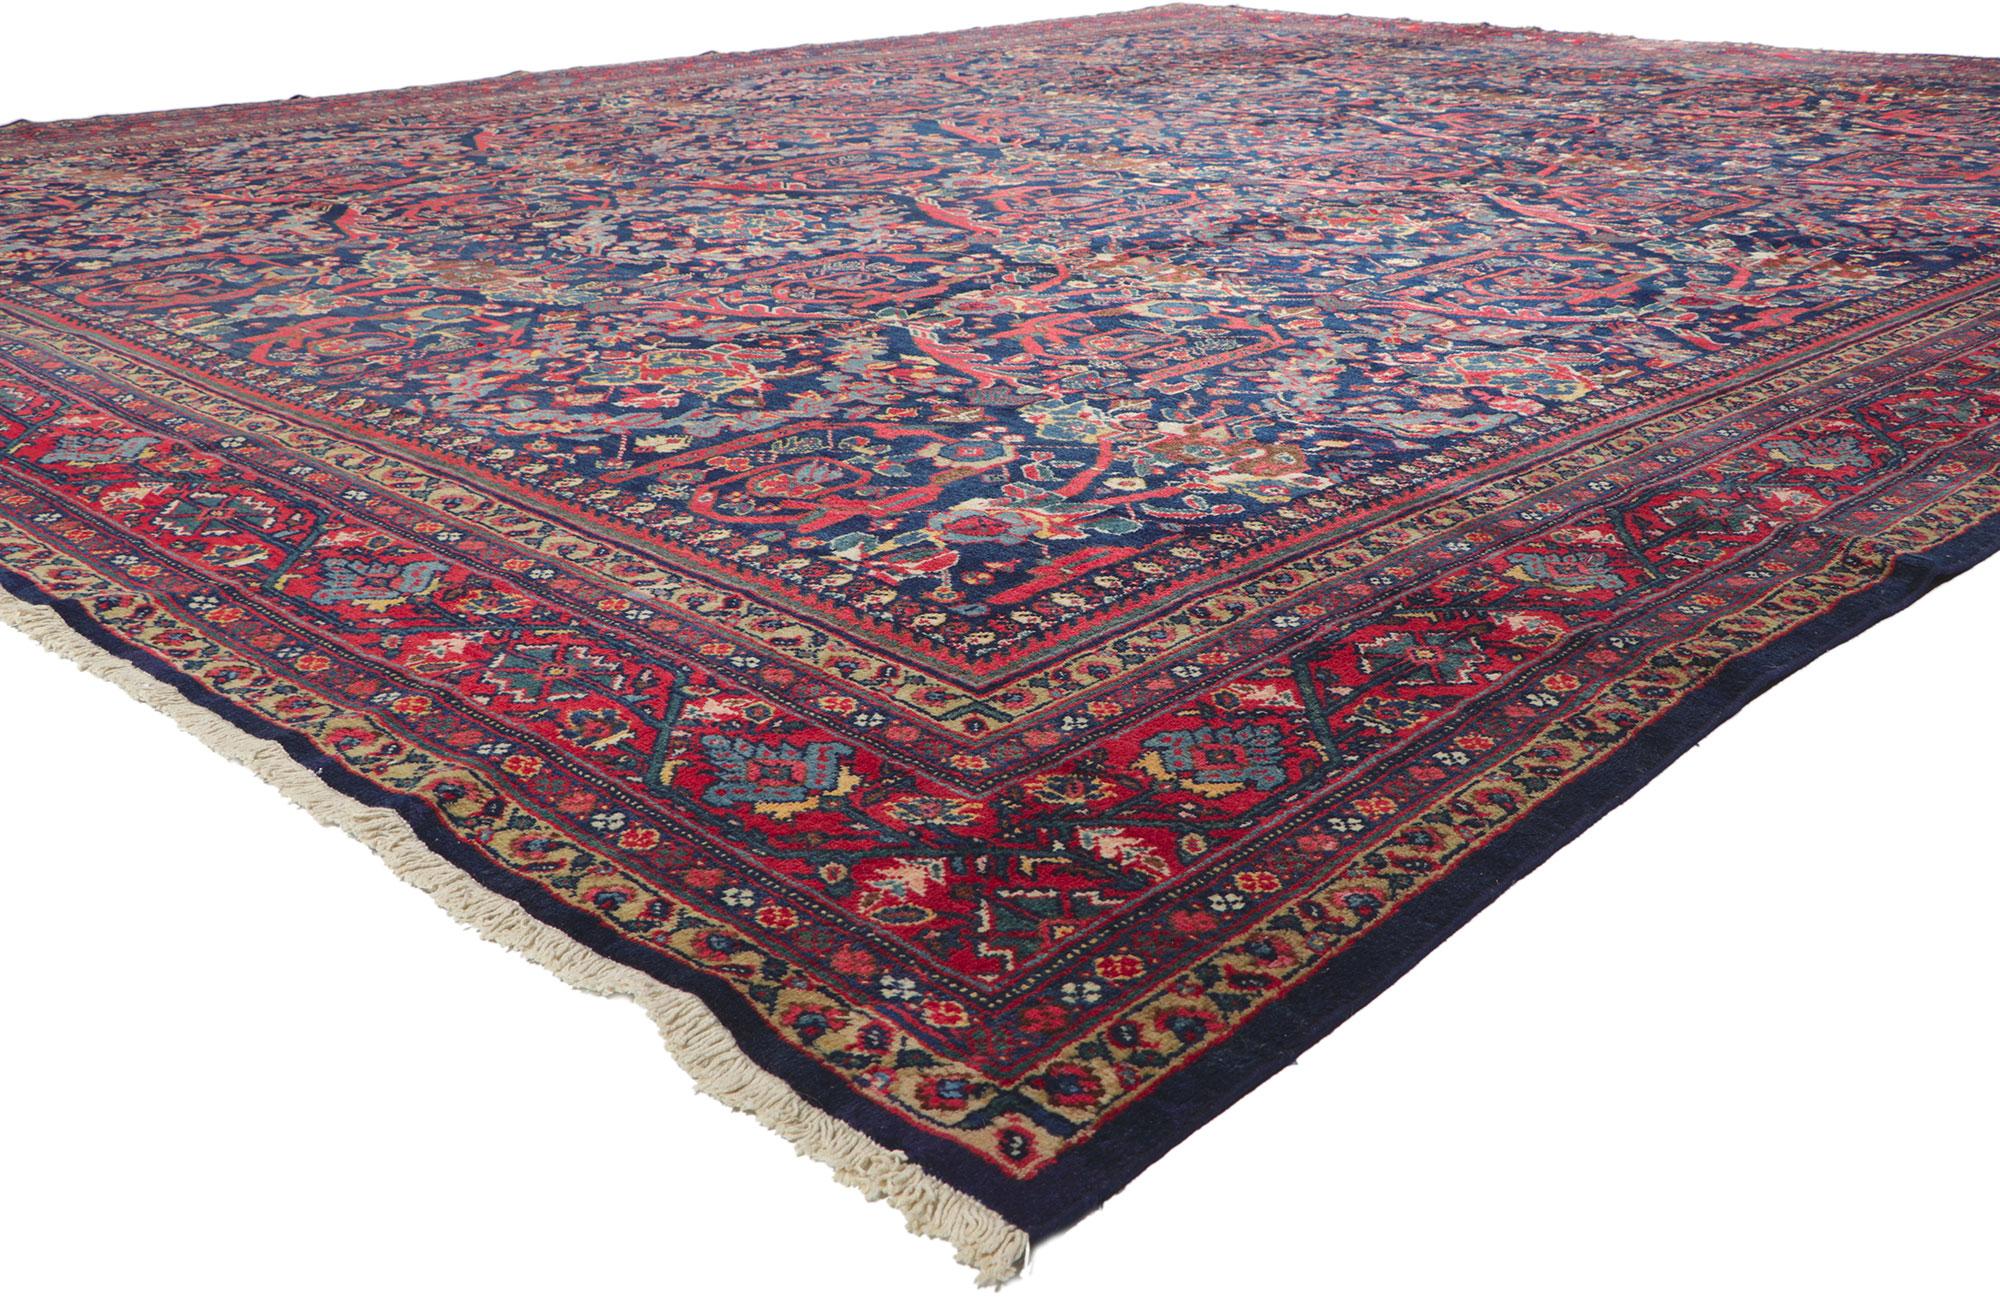 78520 Ancien tapis persan Mahal à motifs Sultanabad, 14'02 x 17'06.
Présentant le célèbre motif Mustafavi avec des détails et une texture incroyables, ce tapis persan Mahal surdimensionné est une vision captivante de la beauté du tissage. Le design